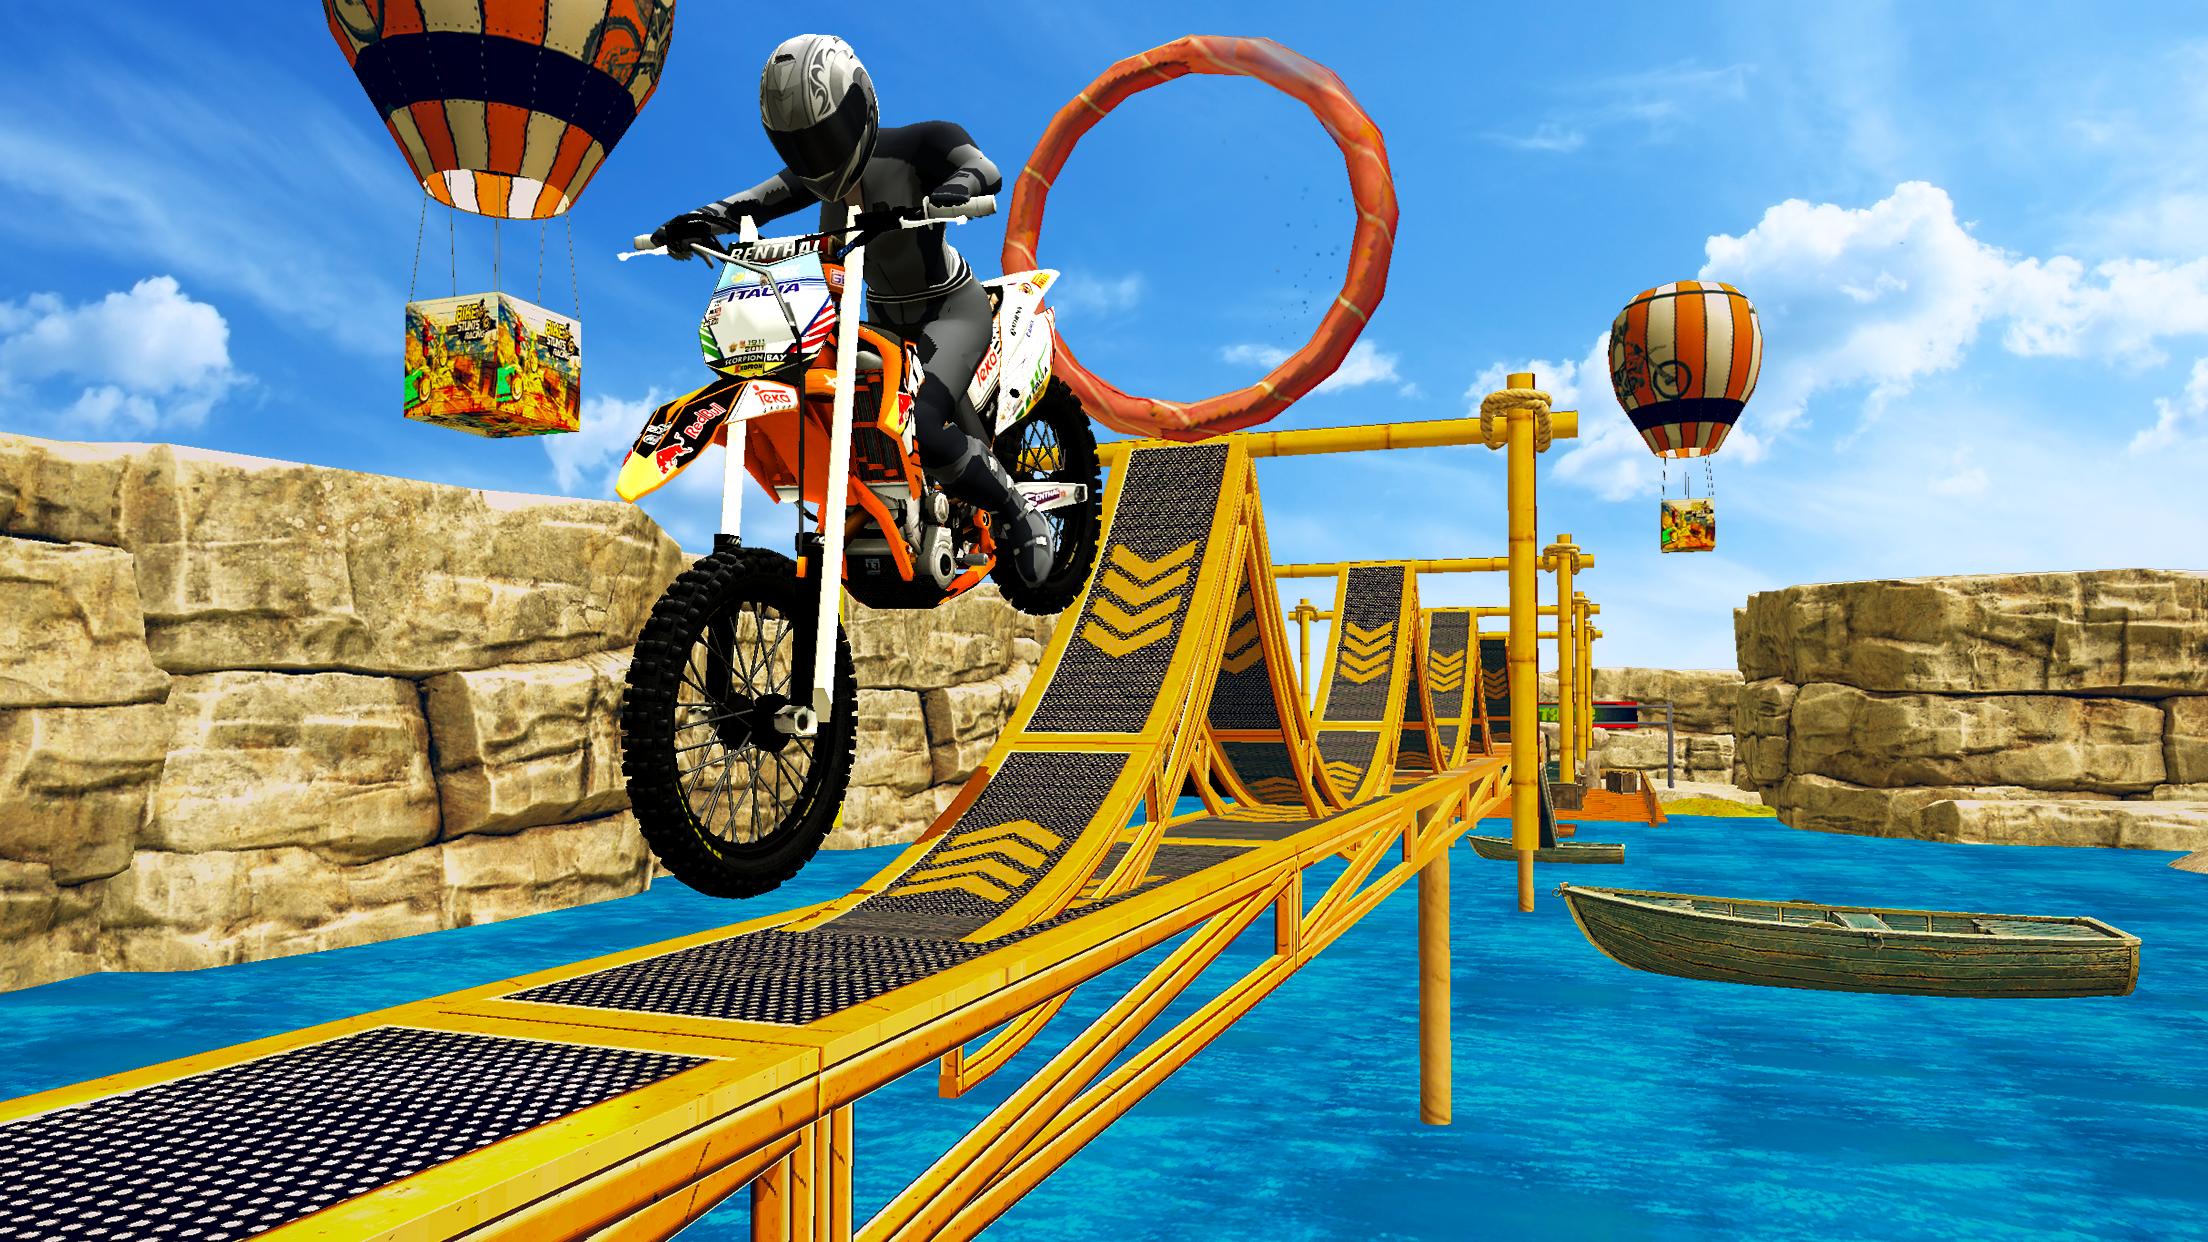 Bike Stunt Games- Free Racing Dirt Bike Games 2020 pour Android ... - Screen 7.jpg?fakeurl=1&type=